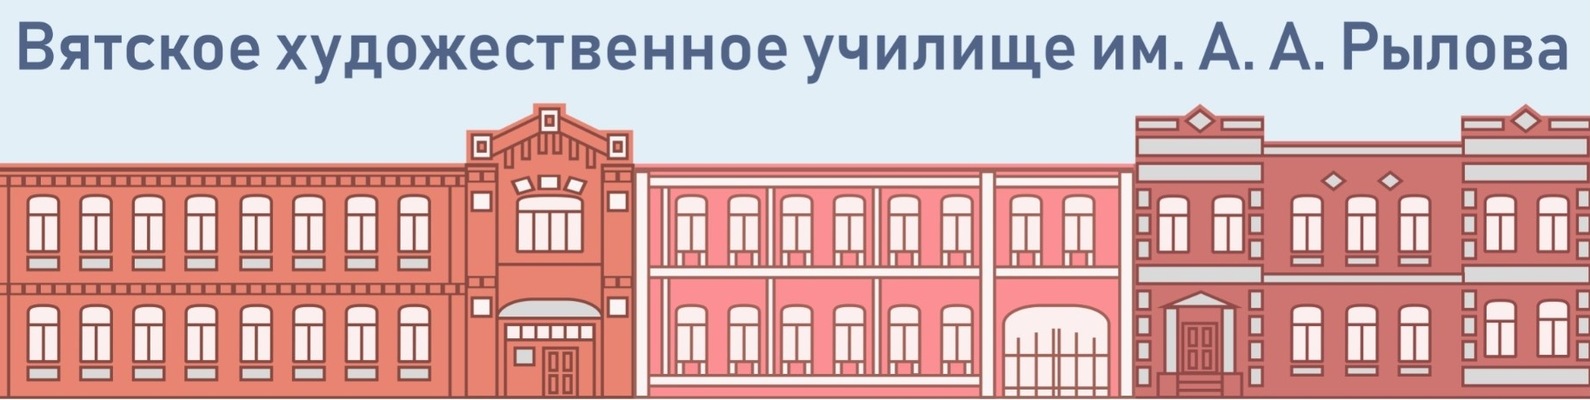 Логотип (Вятское художественное училище имени А. А. Рылова)